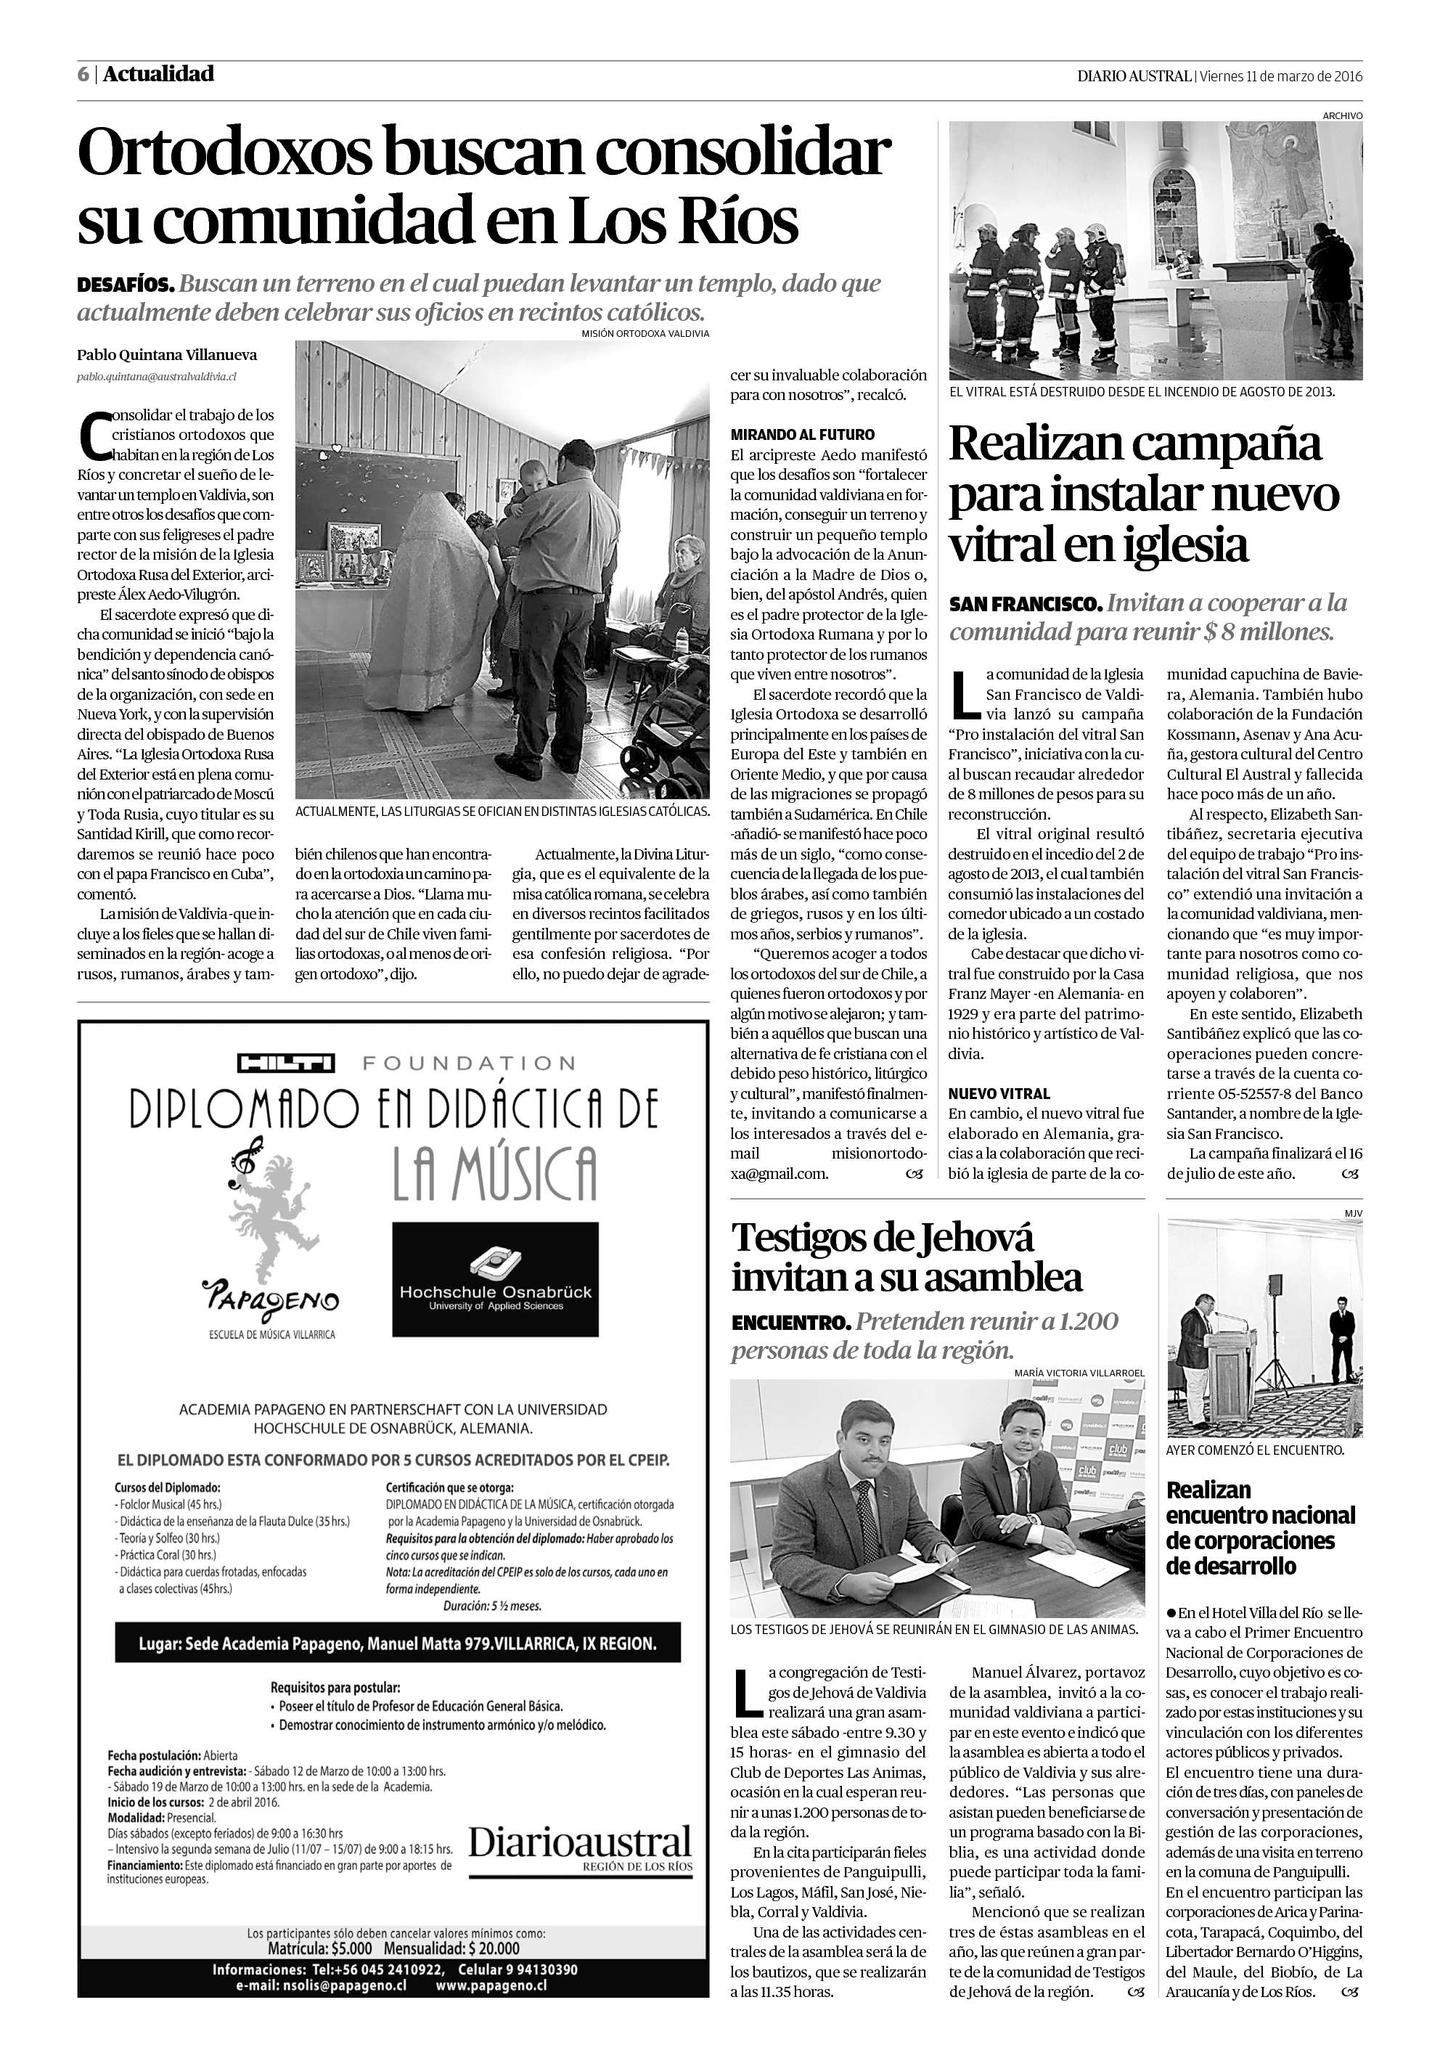 Diario Austral 11/03/2016